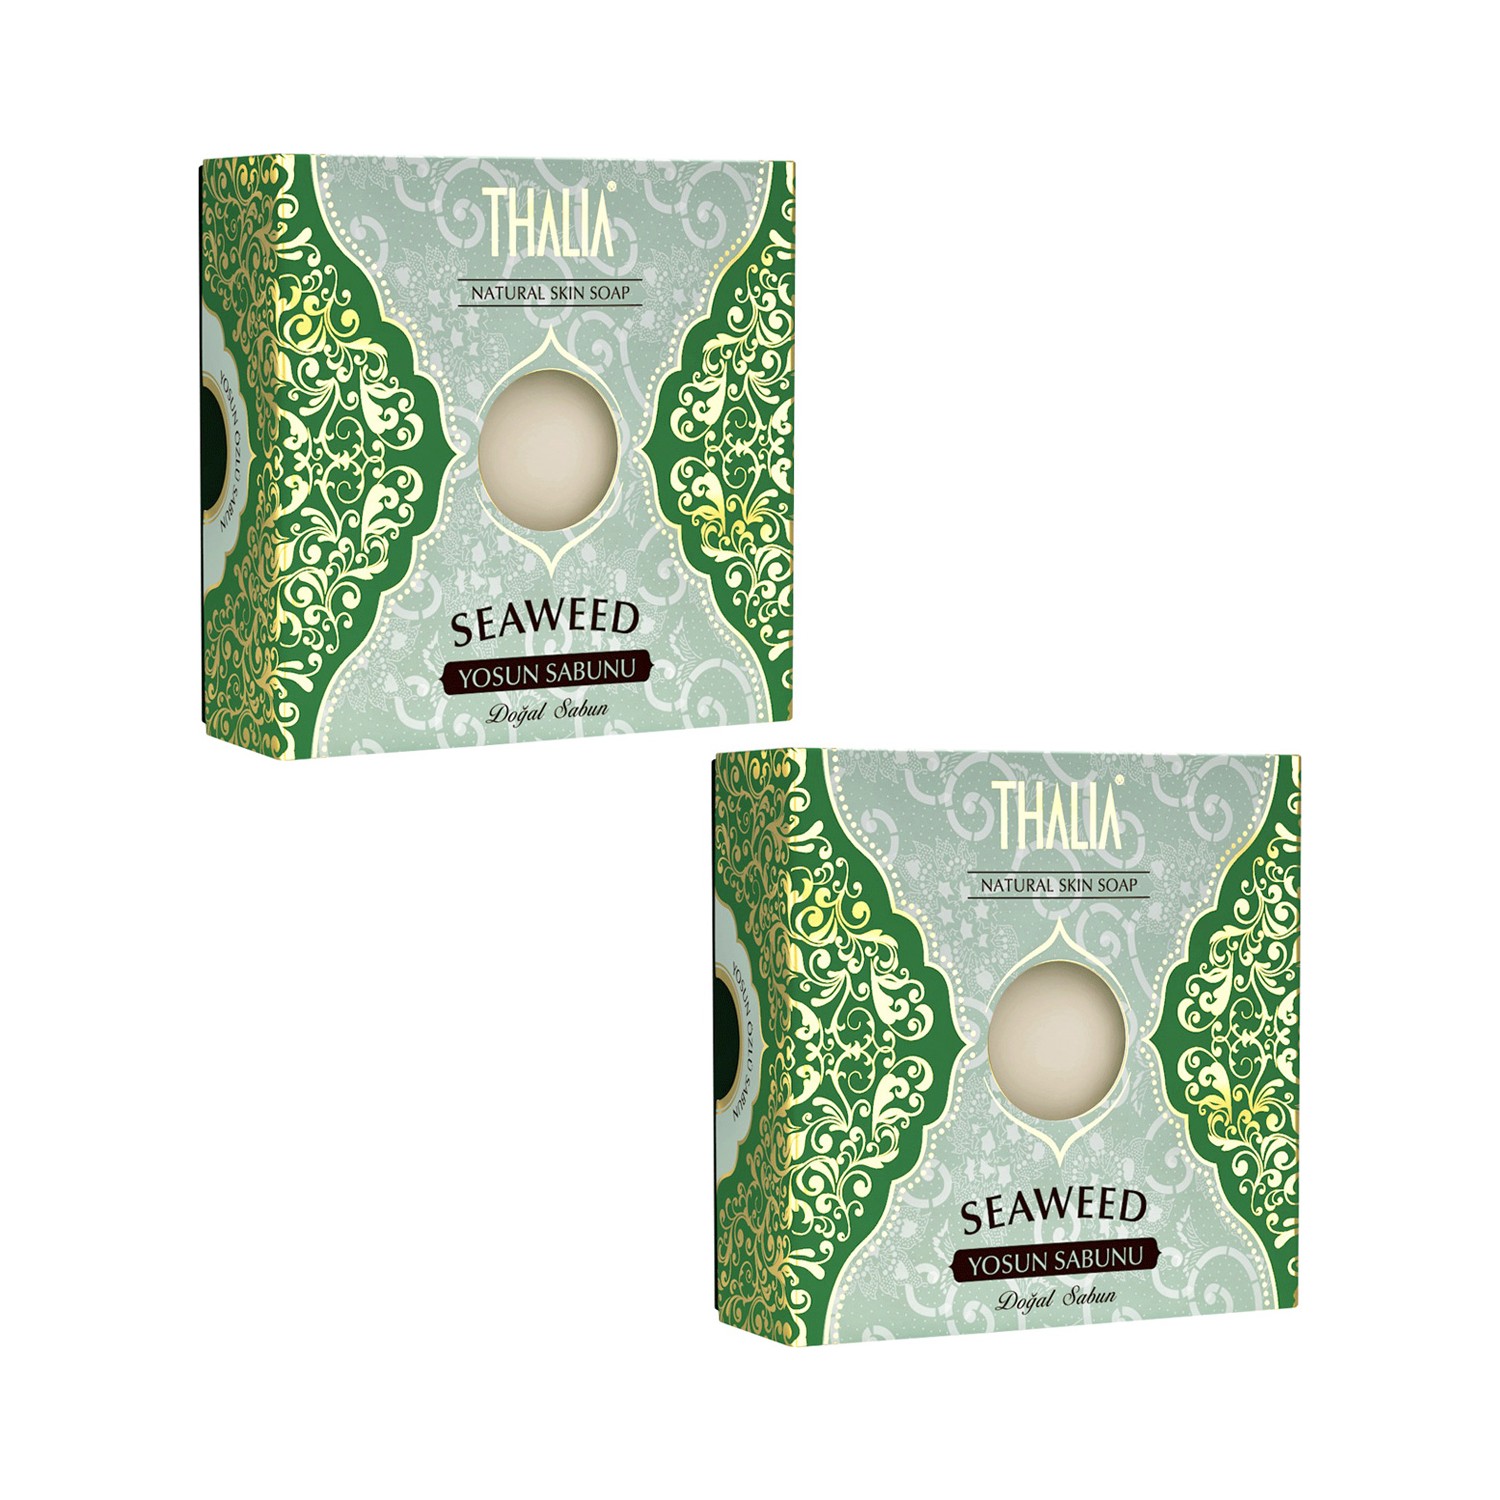 bel premium влажные косметические диски с морскими минералами 30 шт Натуральное мыло Thalia с морскими водорослями, 2 x 125 г